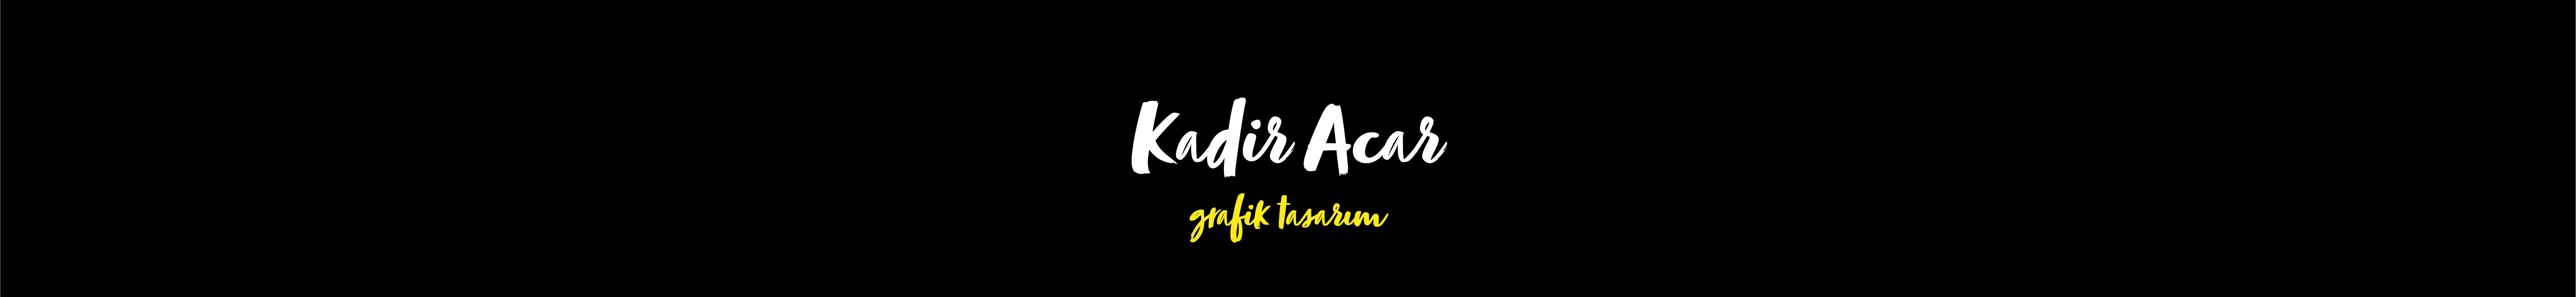 Profil-Banner von Kadir Acar